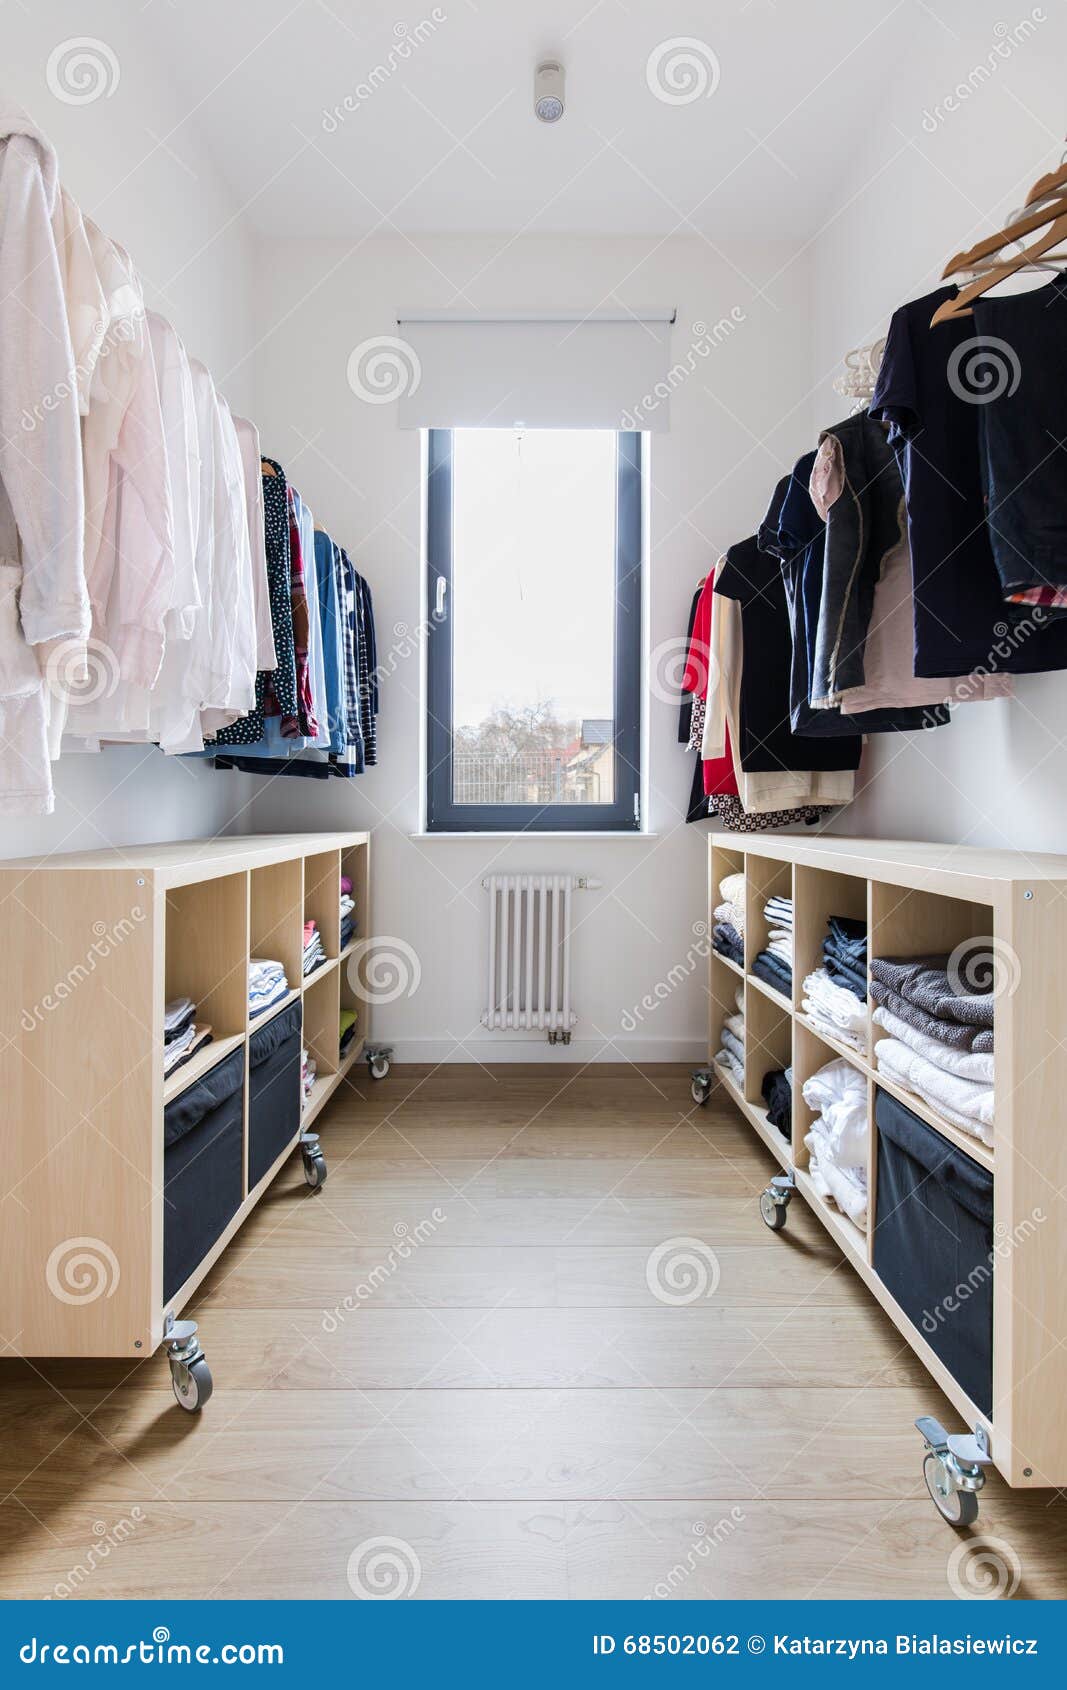 tidy spacious closet